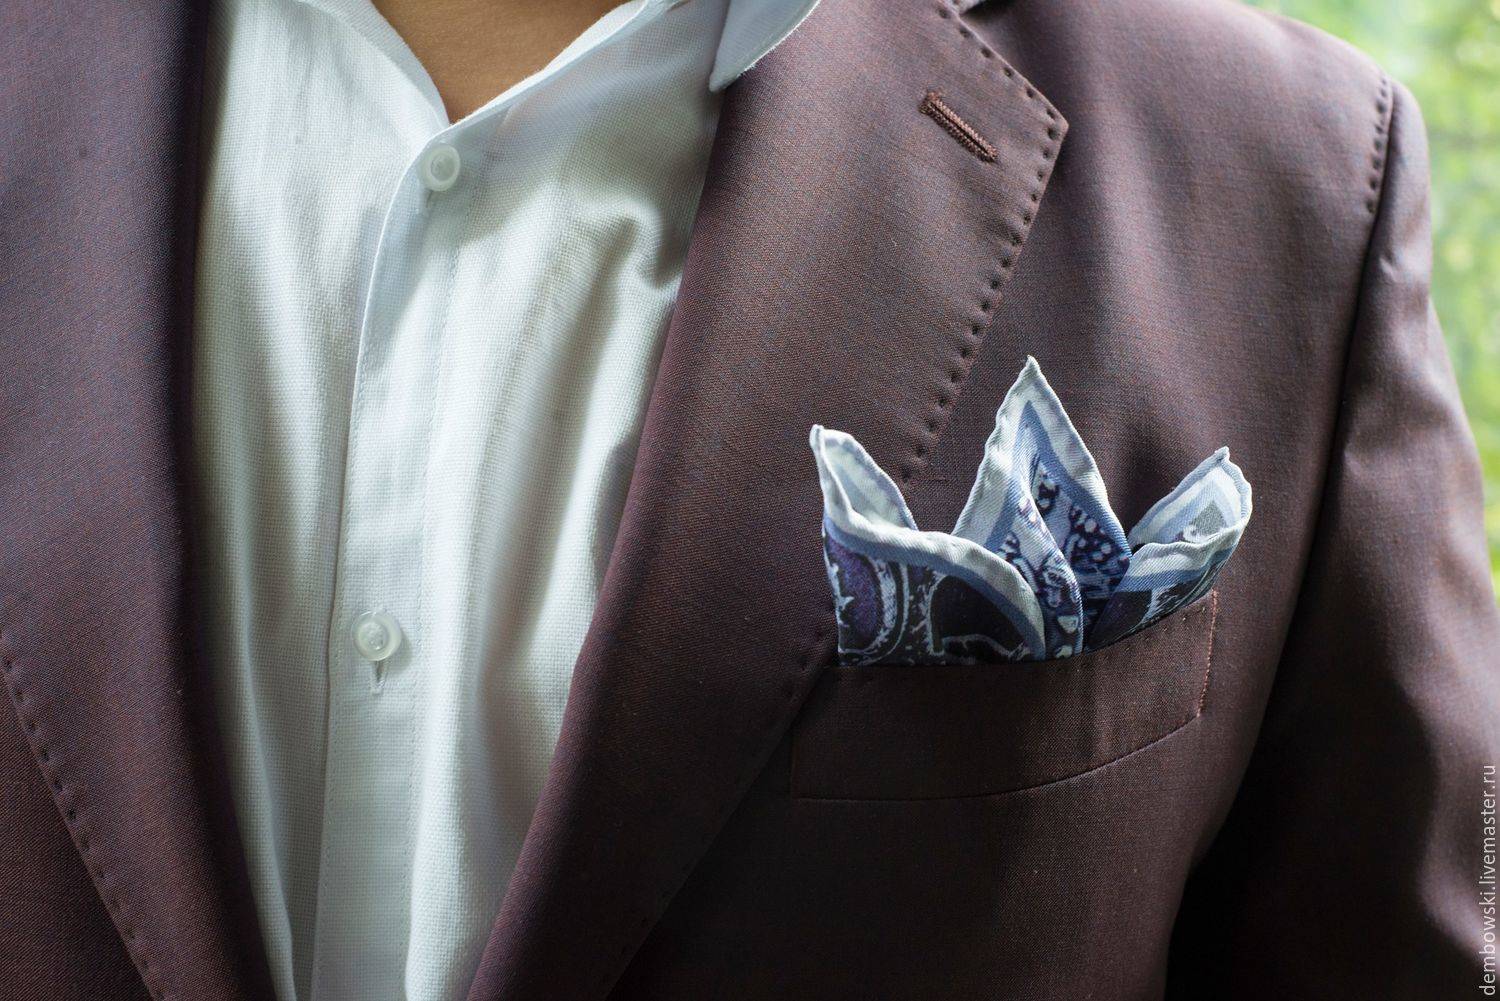 Способы как правильно и красиво сложить платок в нагрудный карман пиджака